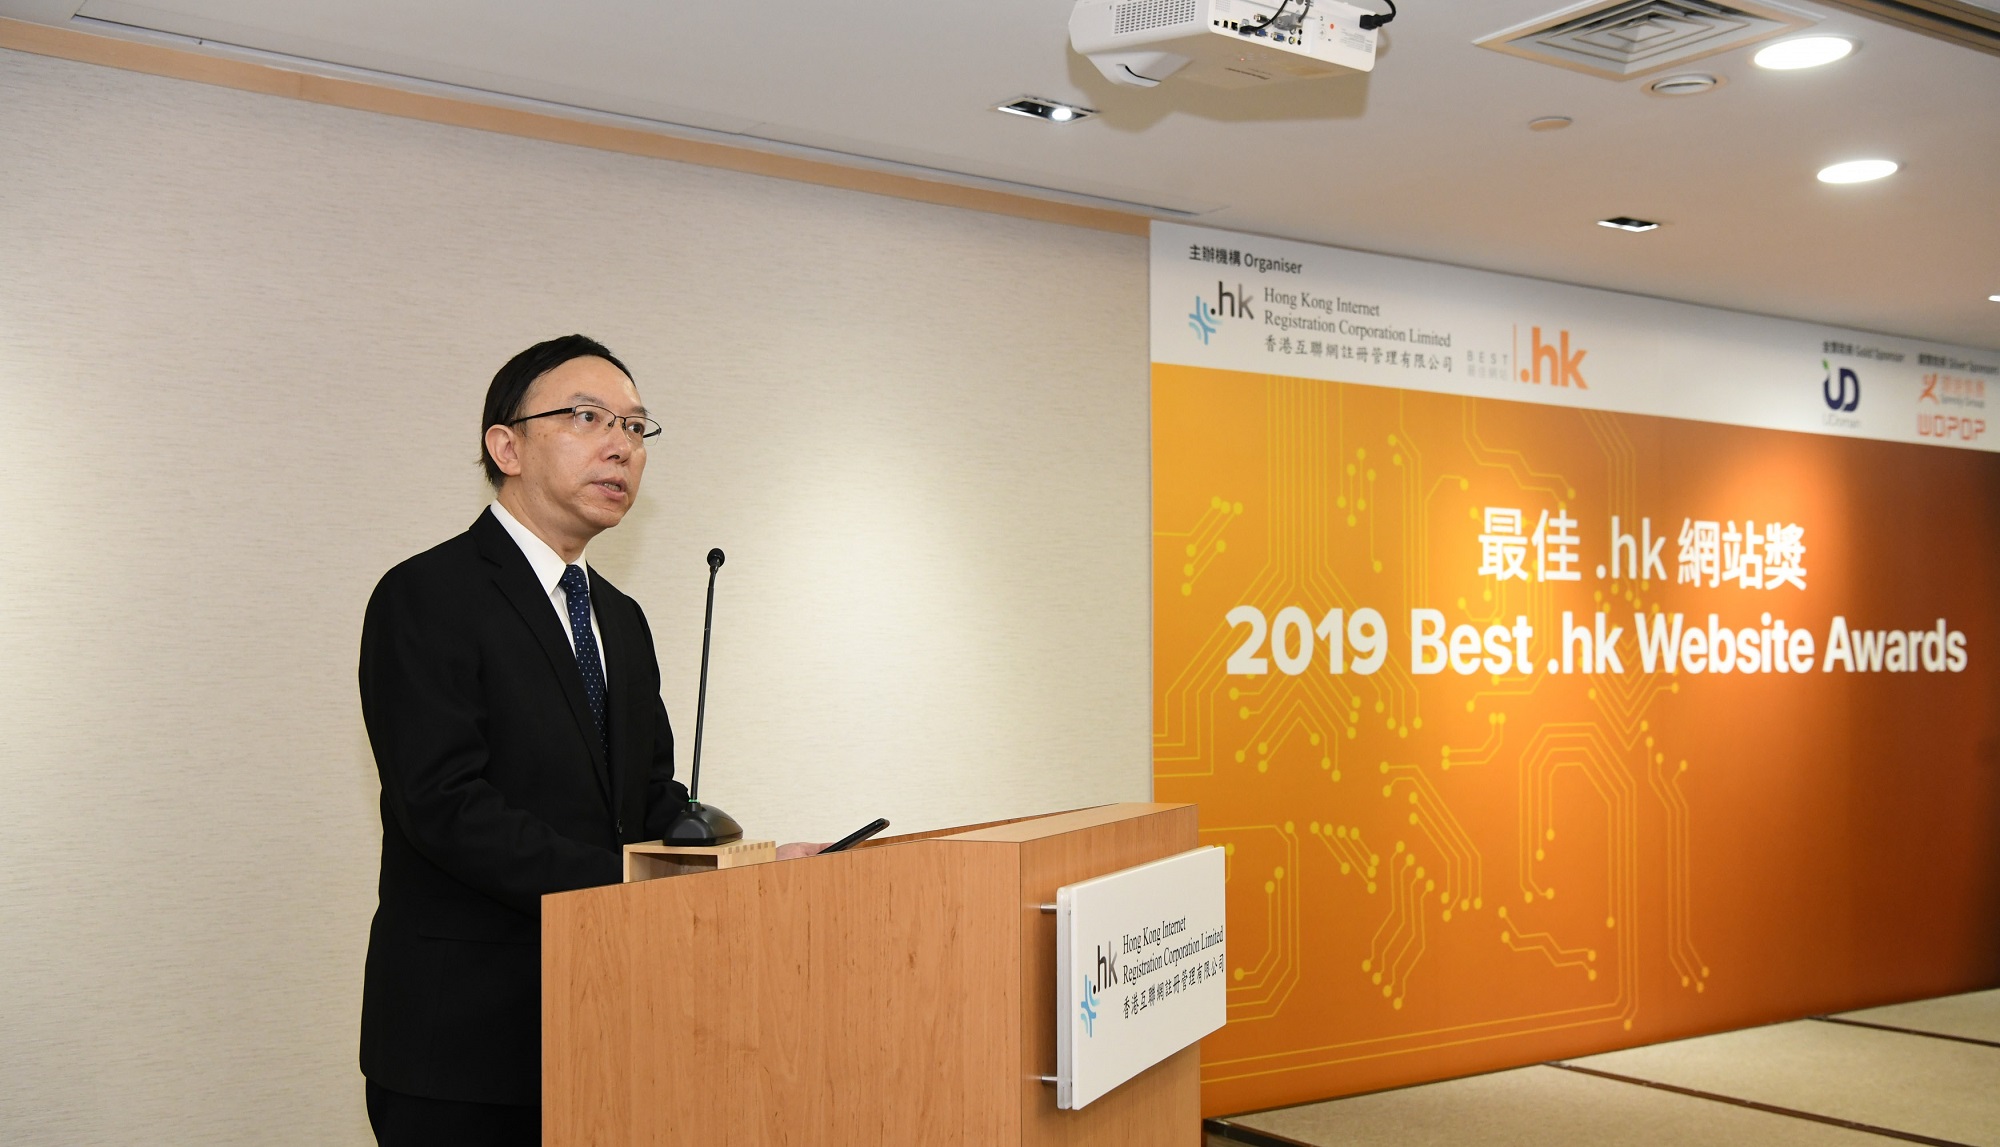 政府資訊科技總監林偉喬先生於「2019年度最佳.hk網站奬頒奬典禮」上致辭